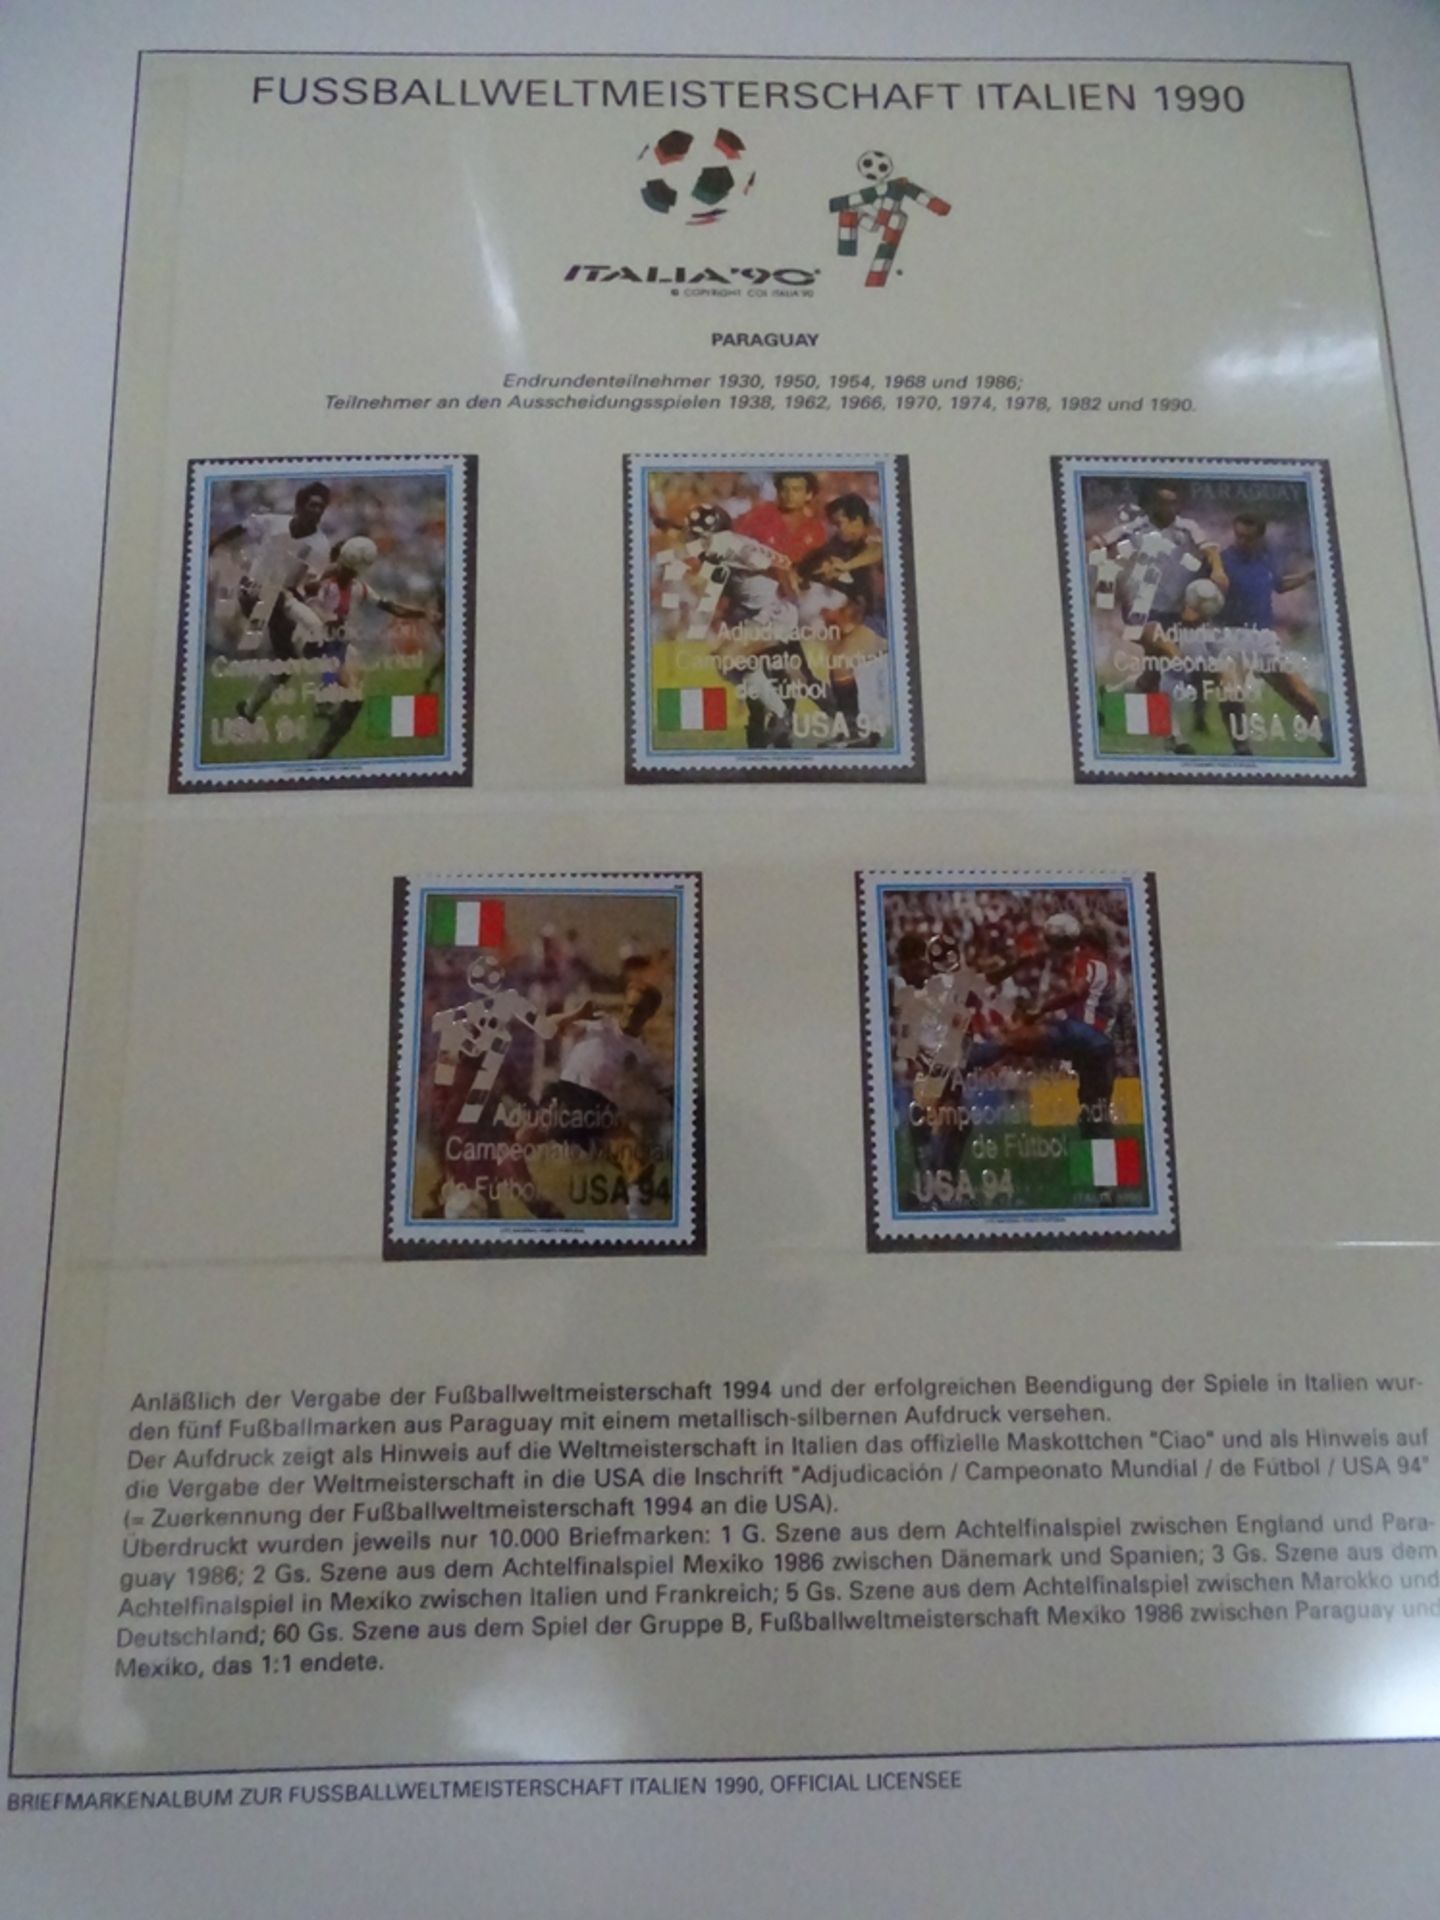 4x lomplette Linbder Ordner  "Italia 90" Briefmarkenalbum zur Fussball- Weltmeisterschaft, official - Bild 4 aus 13